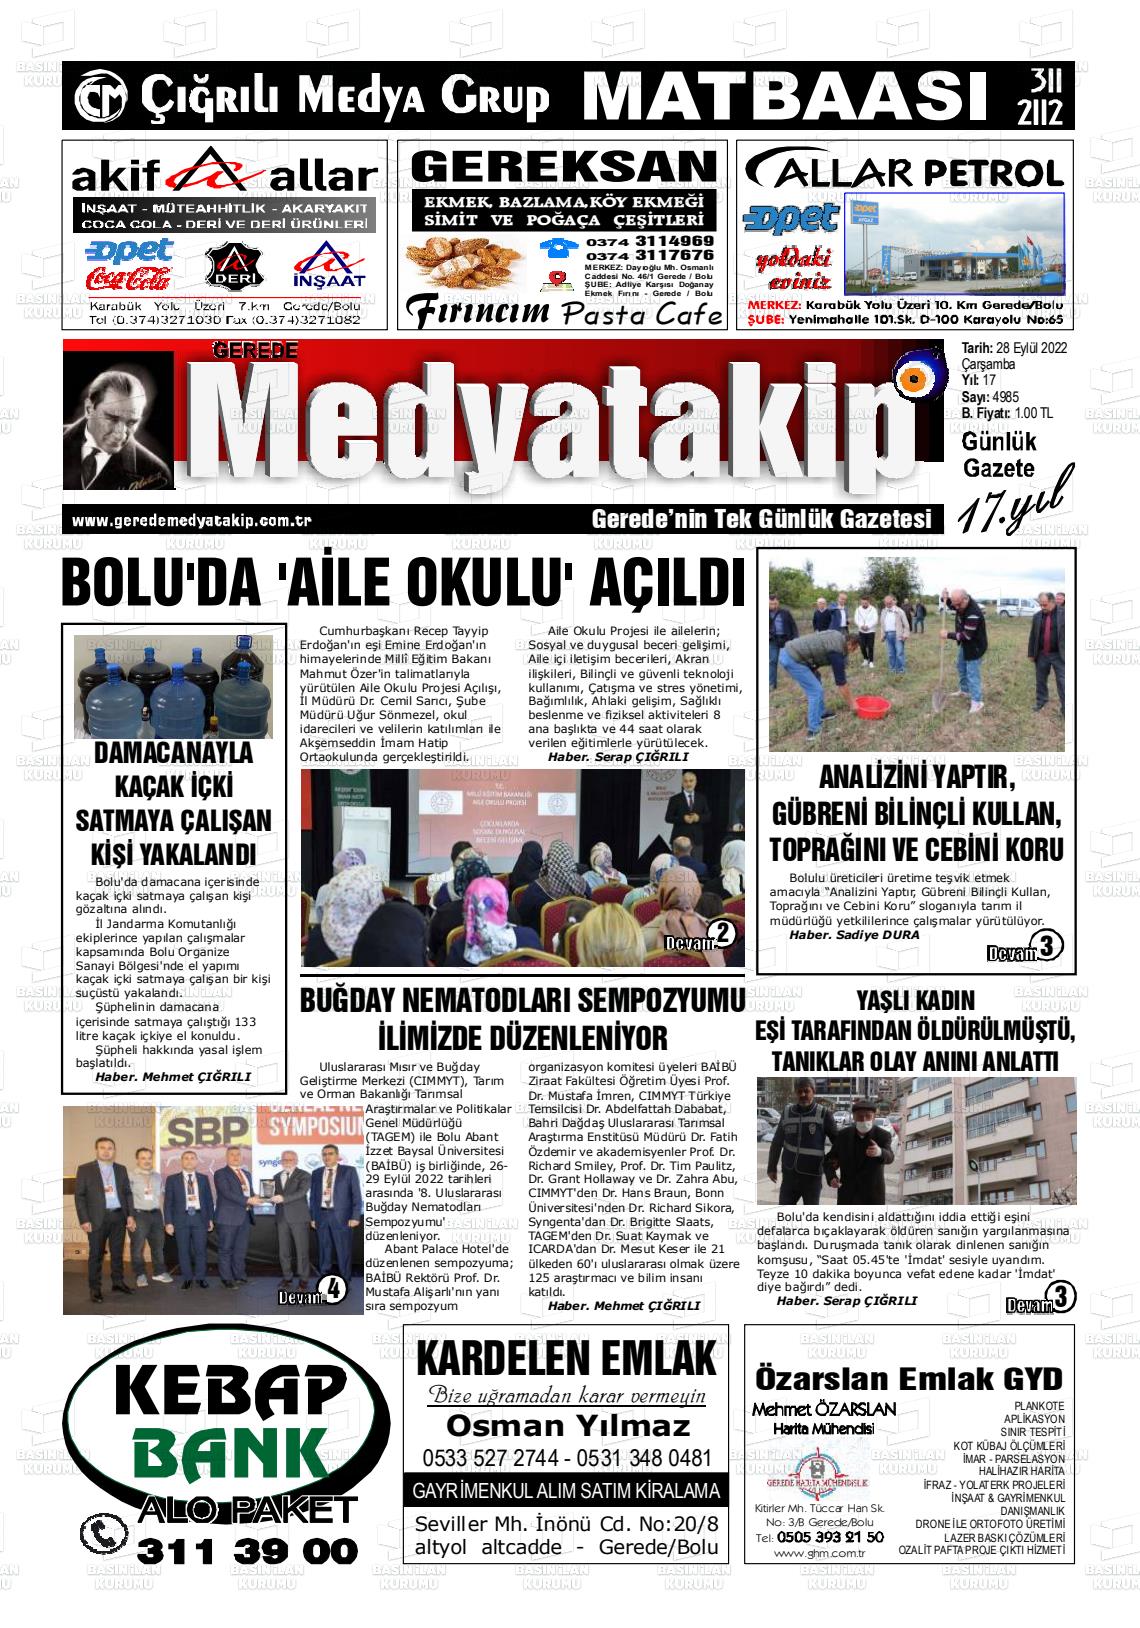 28 Eylül 2022 Gerede Medya Takip Gazete Manşeti